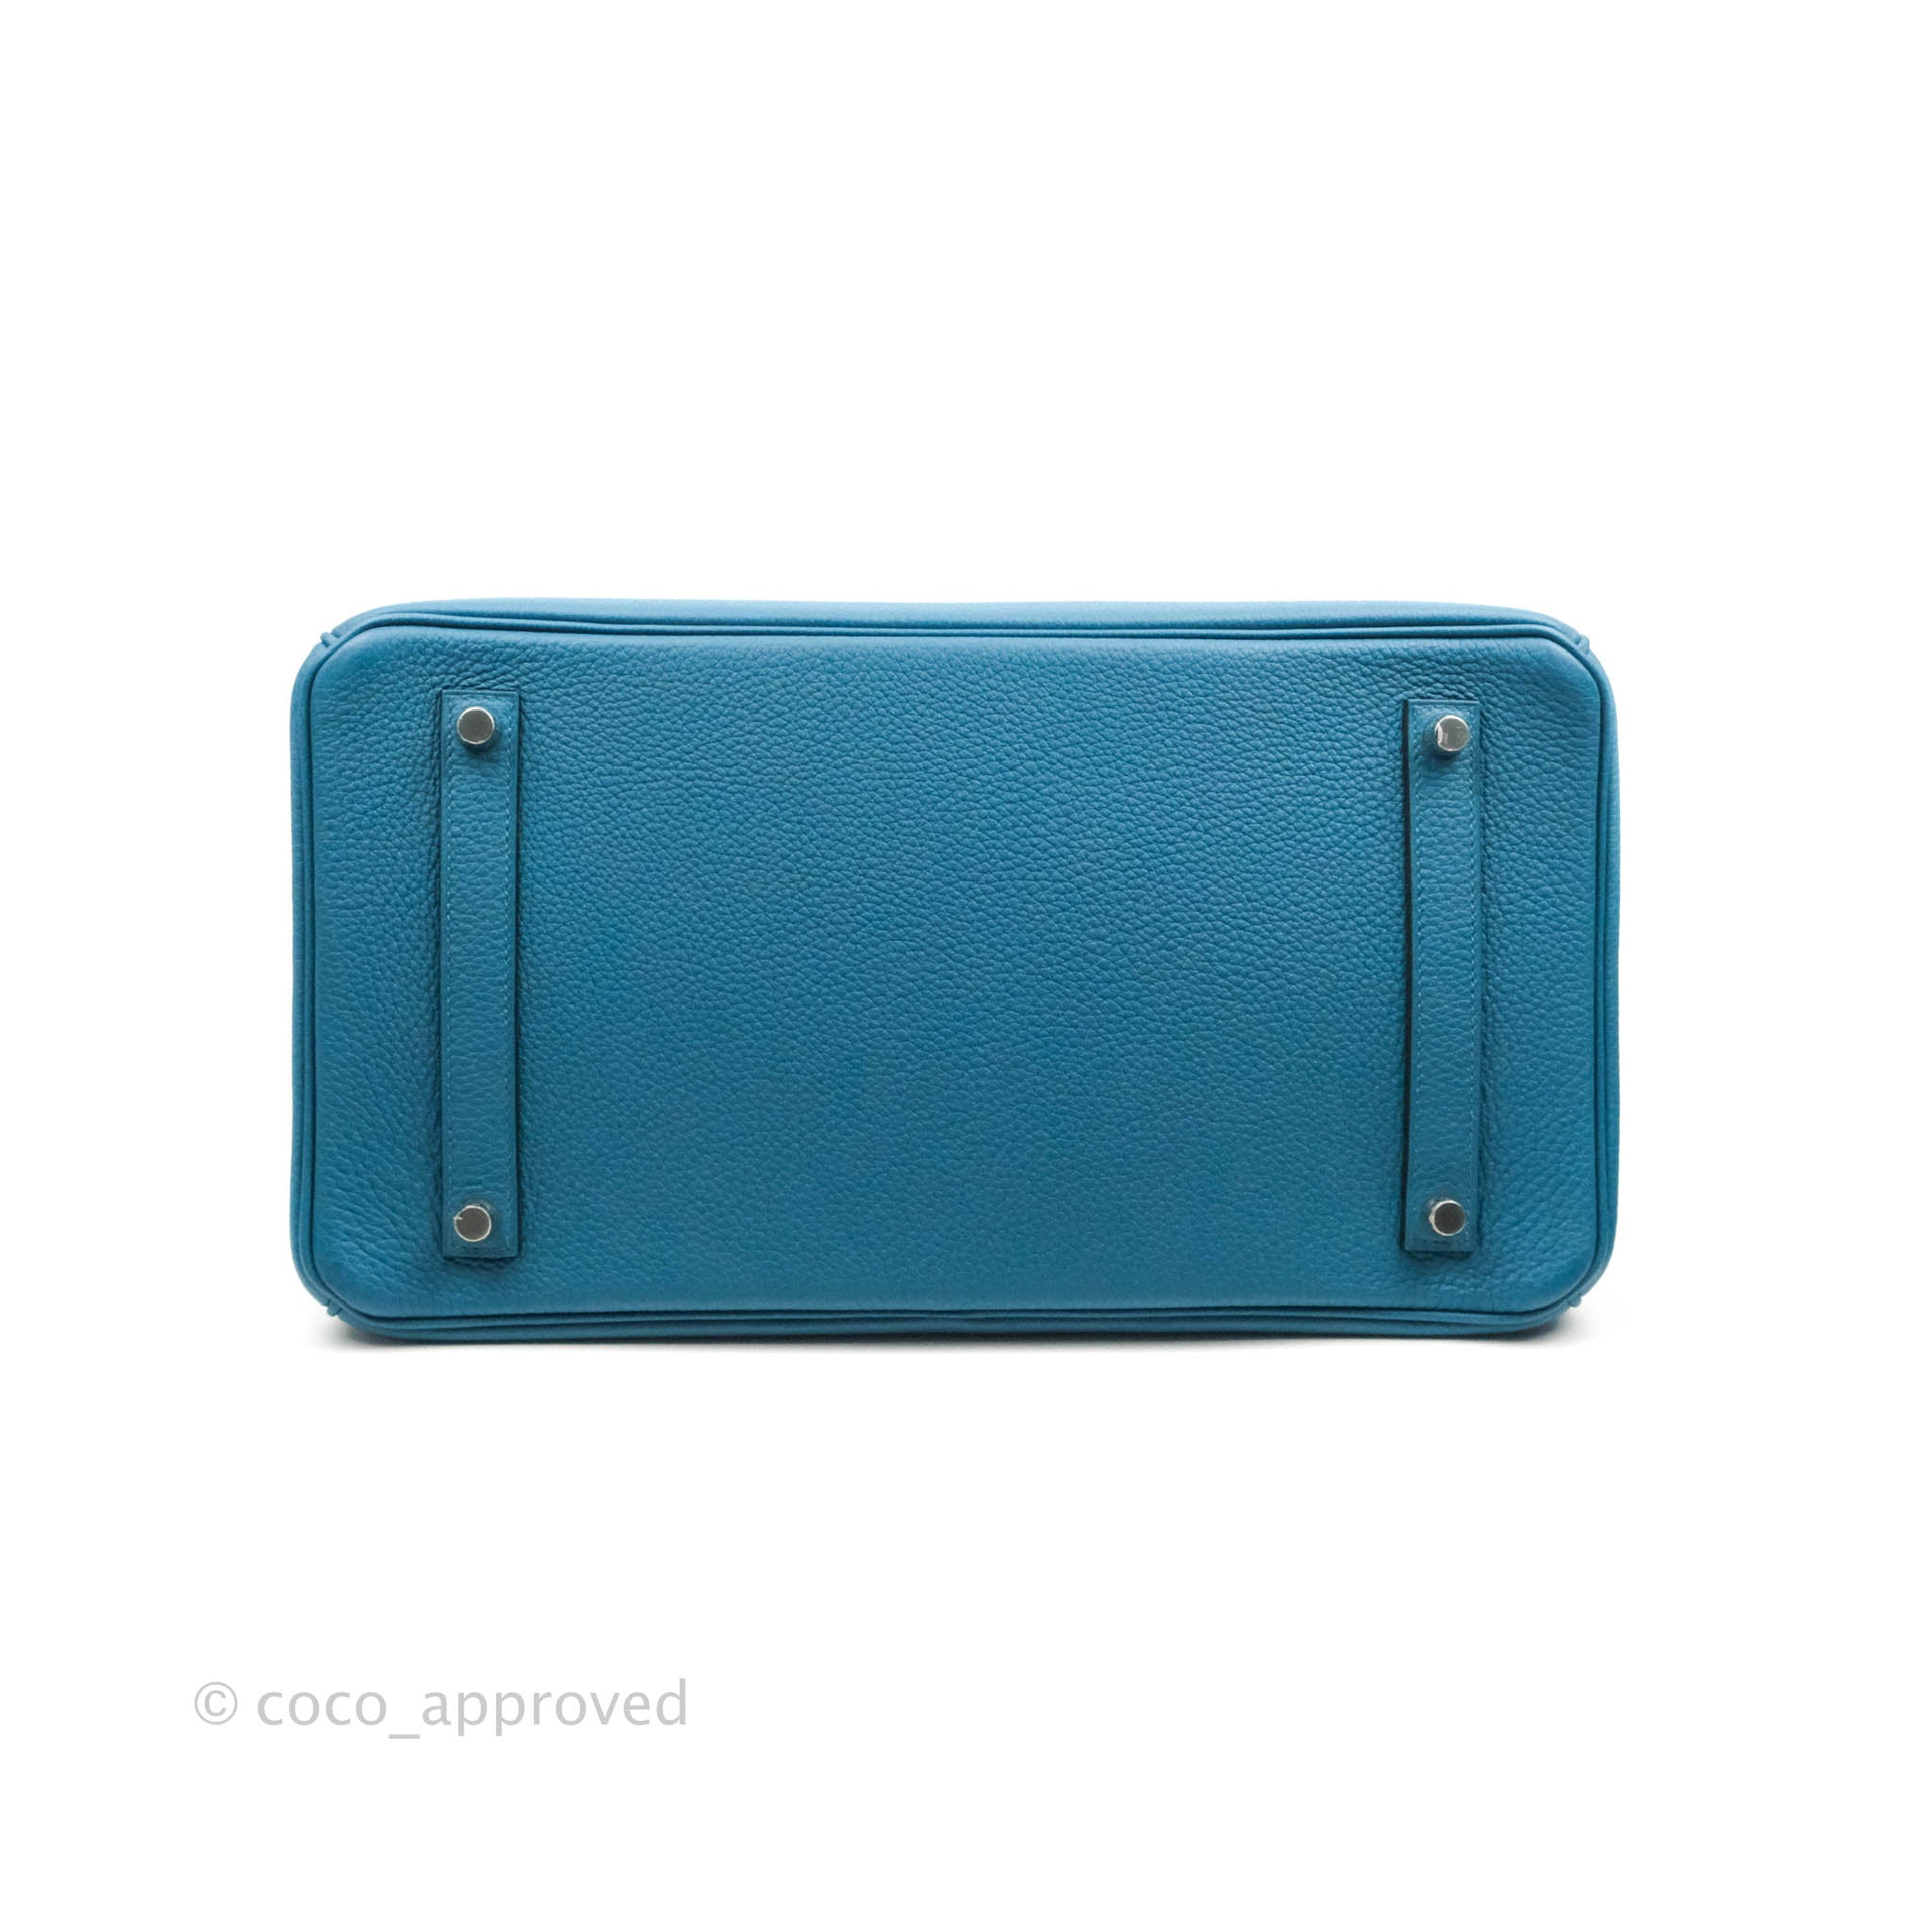 Hermès Cobalt Blue Togo Birkin 35 with Palladium Hardware – Luxury GoRound